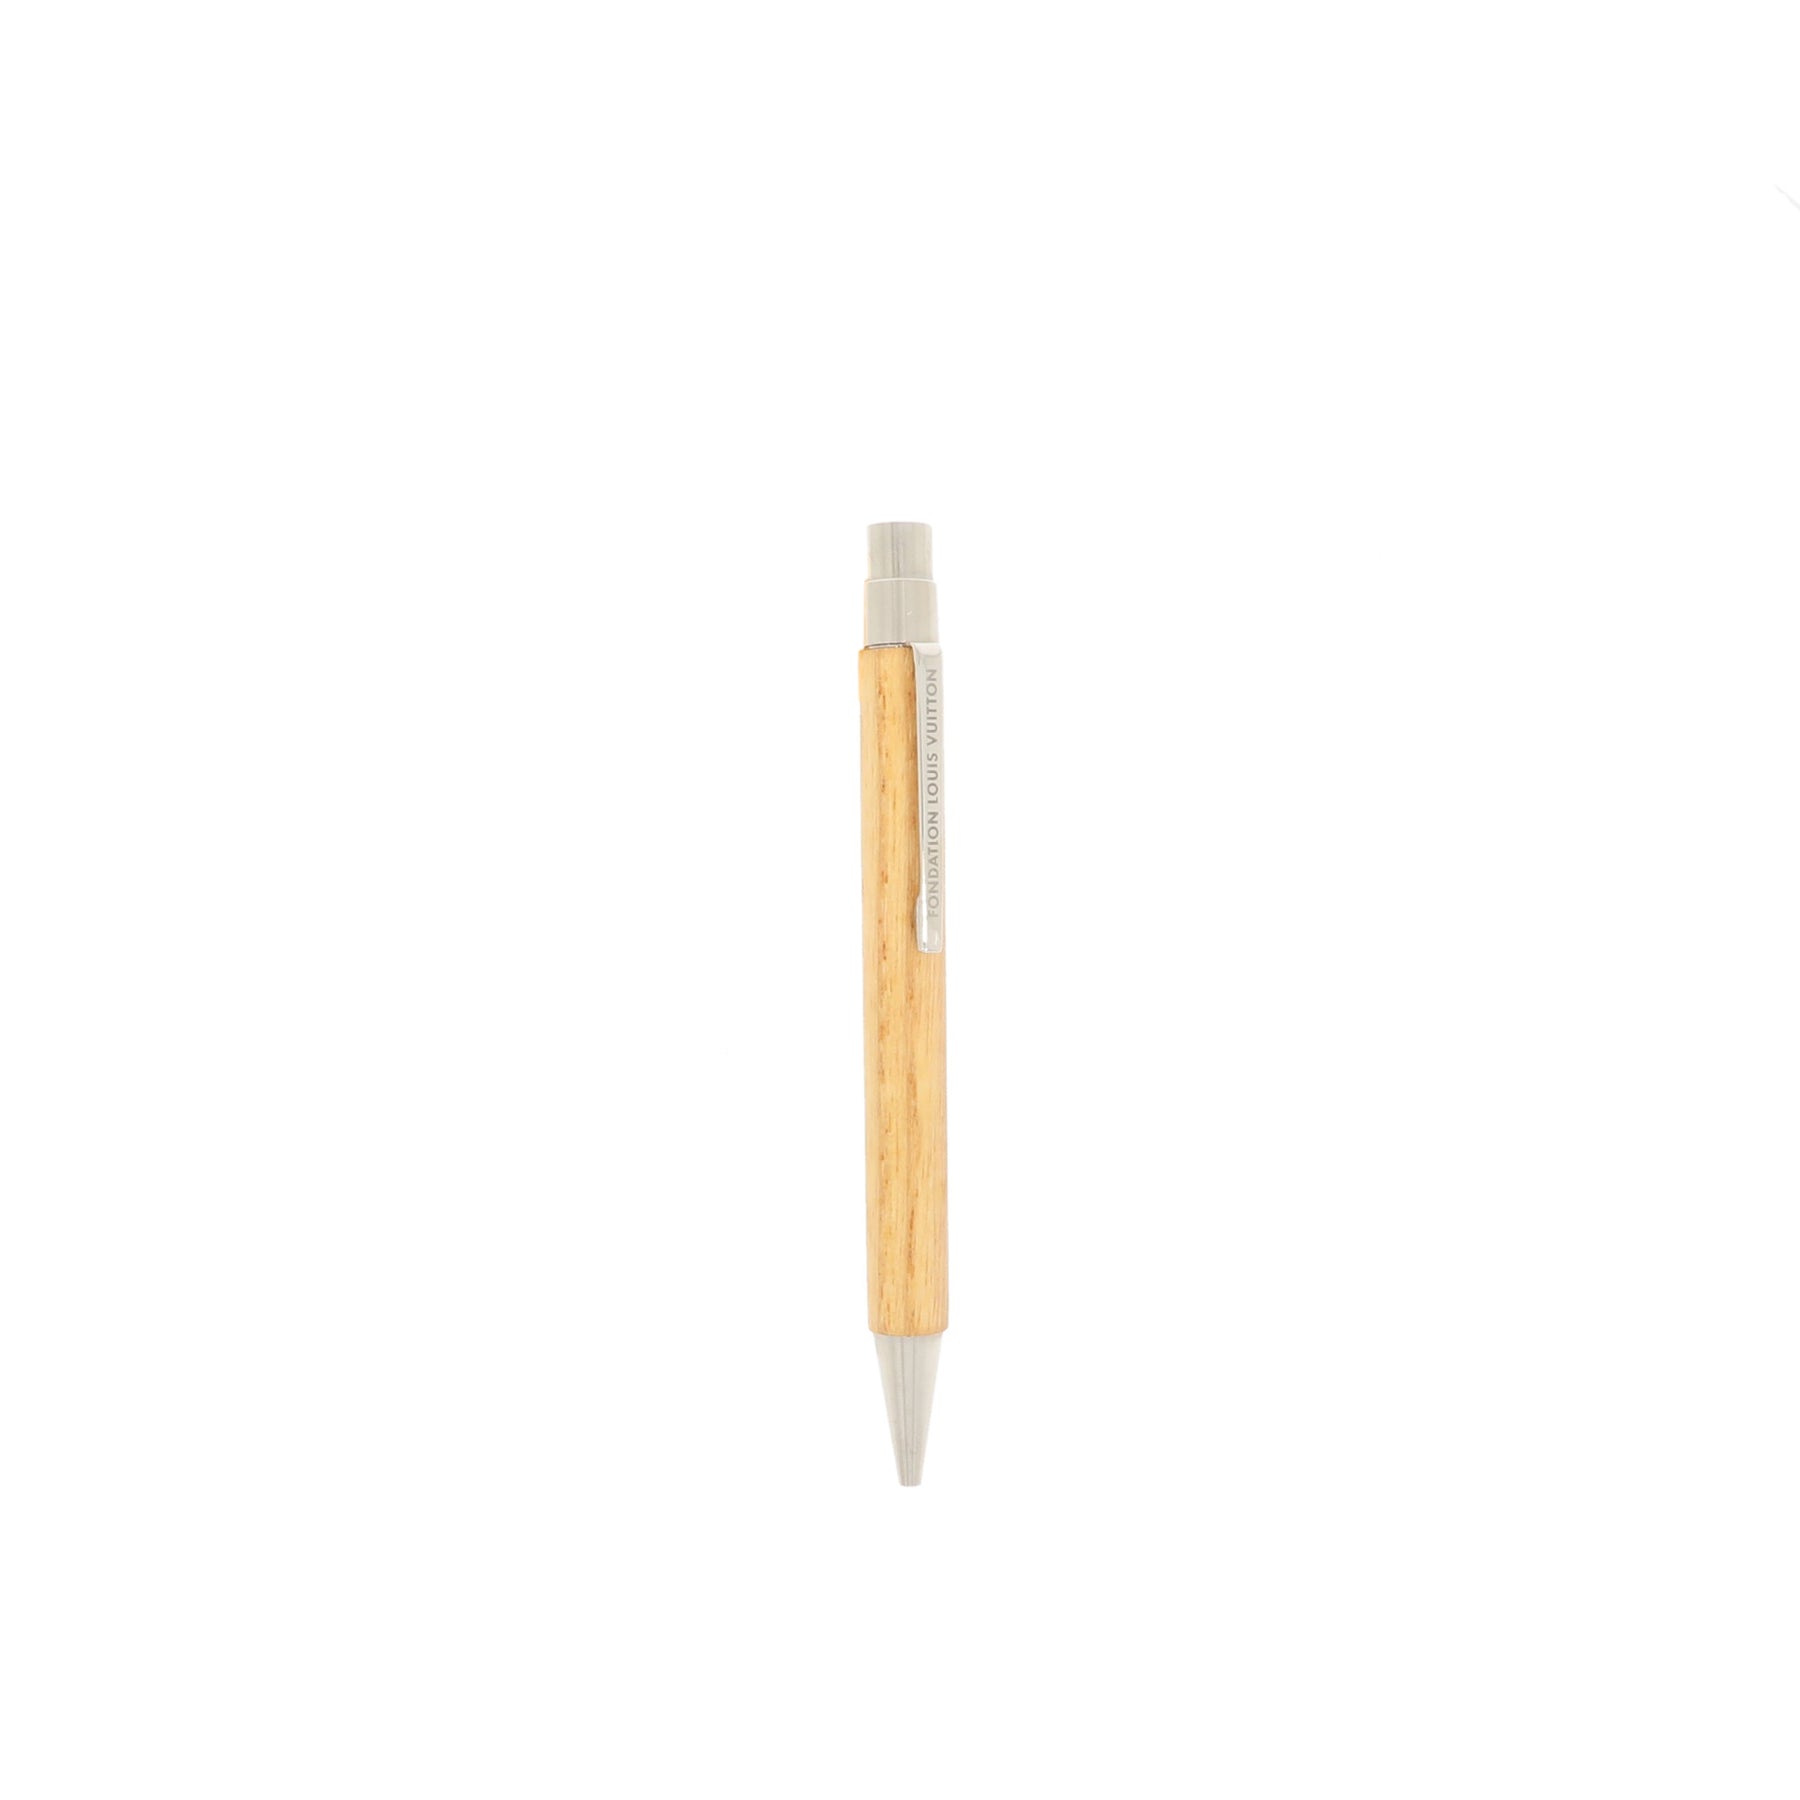 Limited Edition Louis Vuitton Pen – Fancy Lux